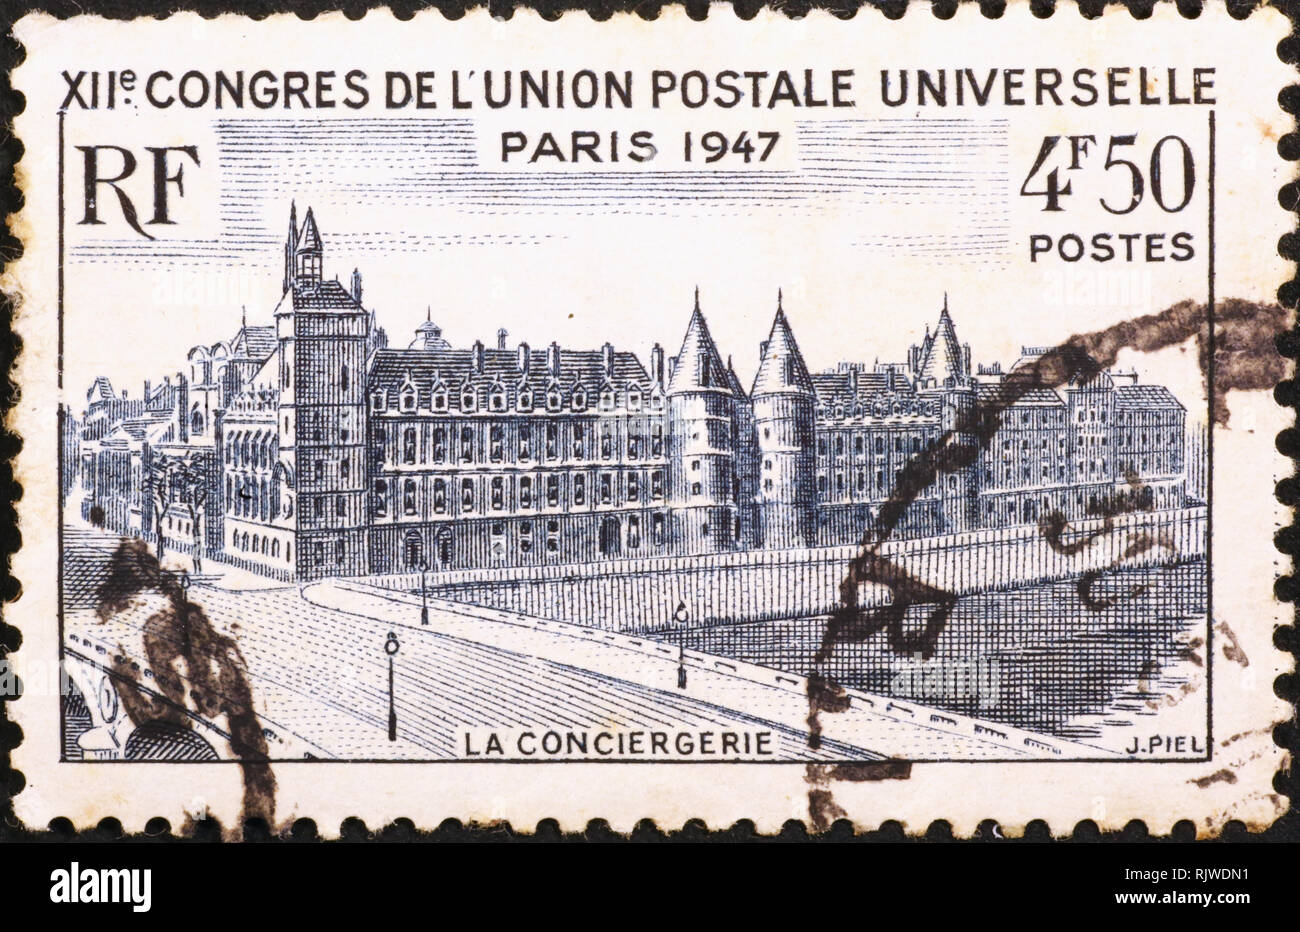 Palais de la Cite in Paris on vintage stamp Stock Photo